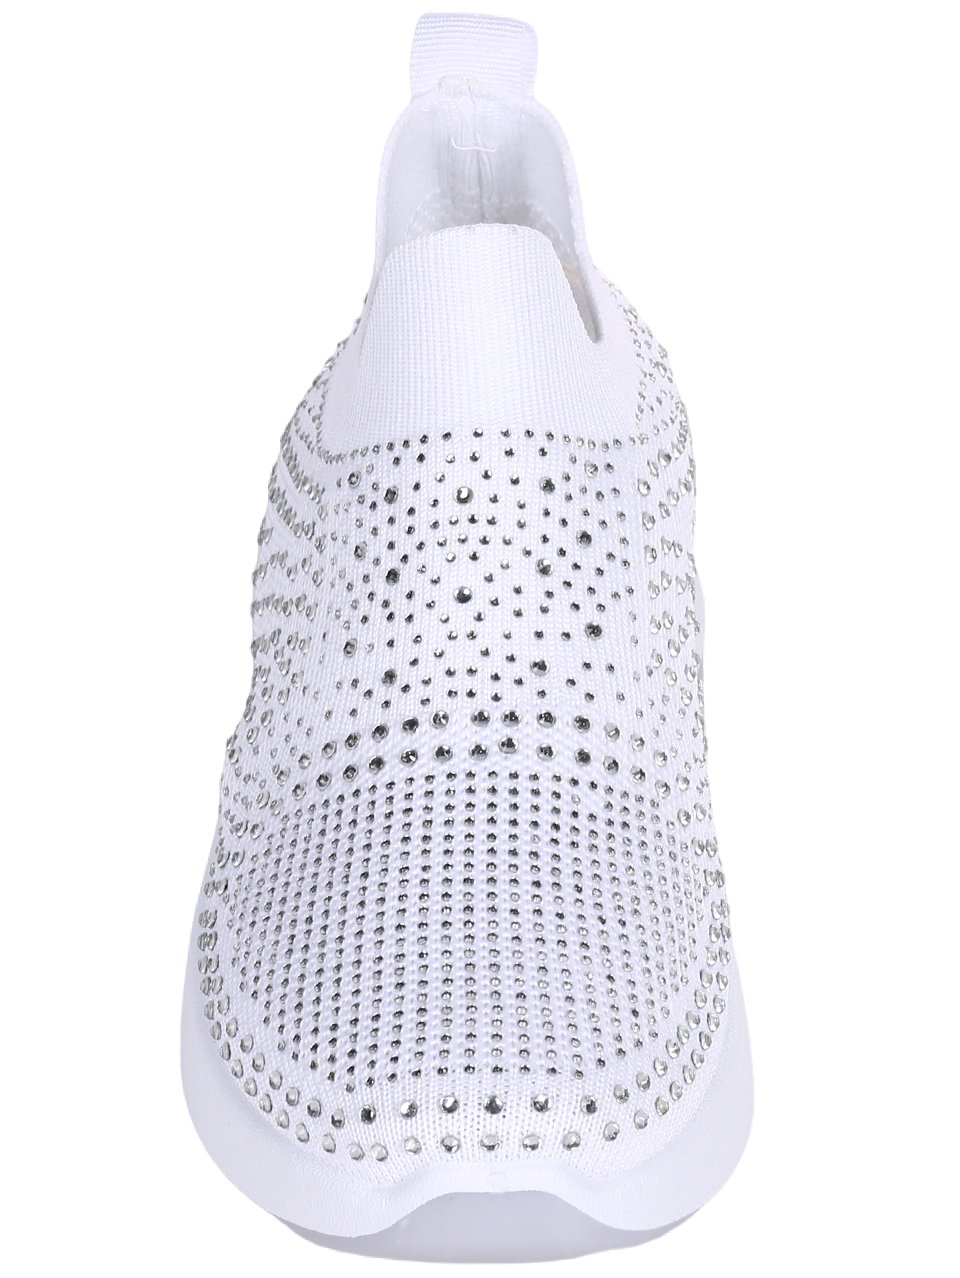 Ежедневни дамски обувки с декоративни камъни в бяло 3U-23042 white